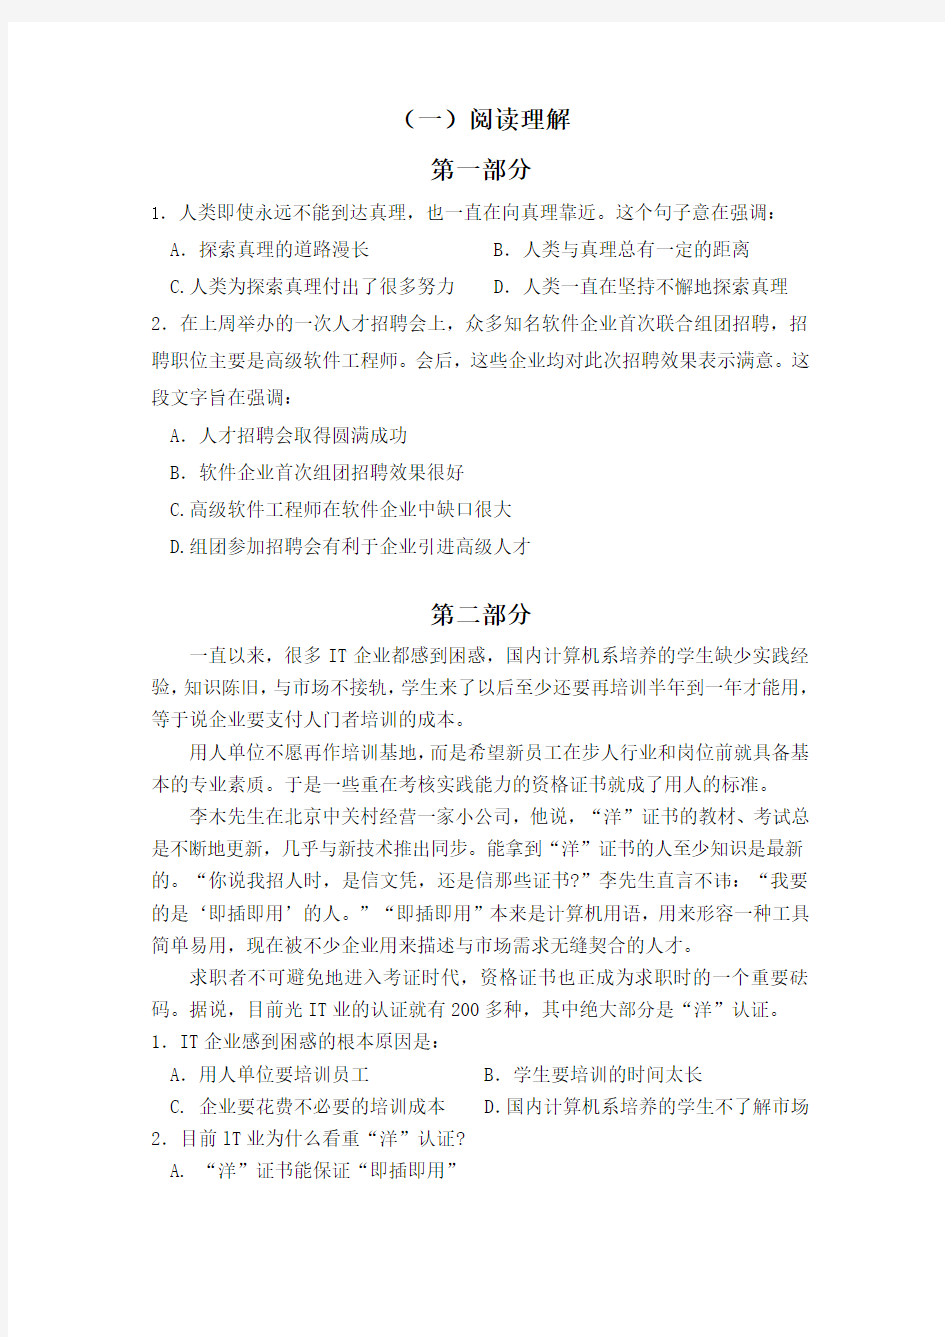 汉语言考试模拟试题自制模拟试卷2(30分钟题量)卷册一